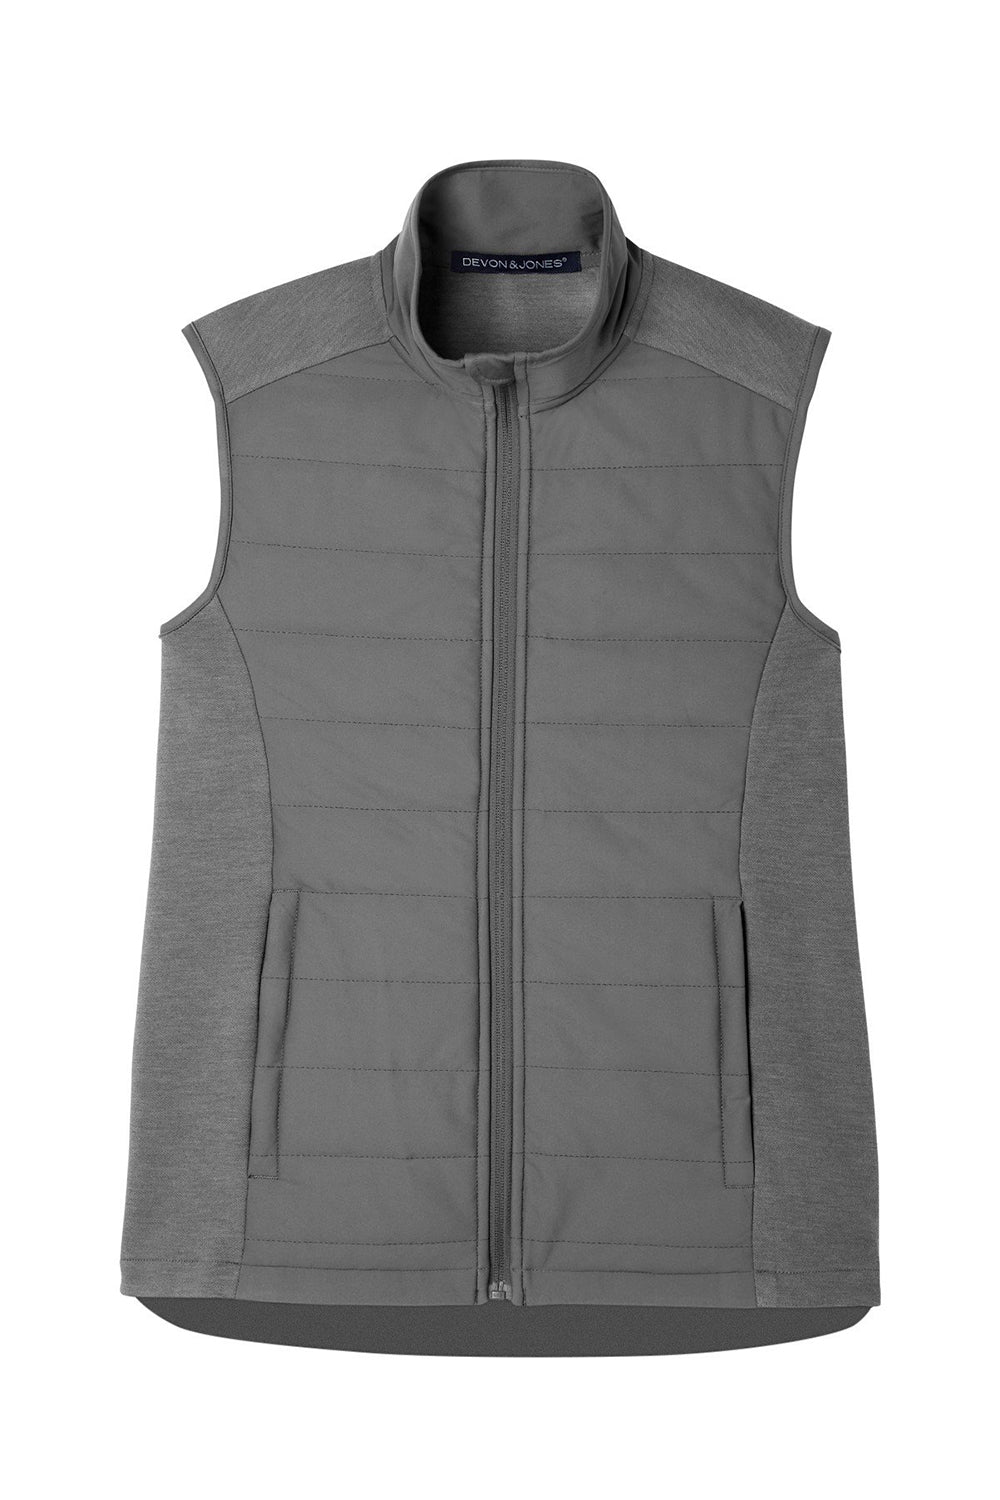 Devon & Jones DG706 Mens New Classics Charleston Hybrid Full Zip Vest Graphite Grey Melange Flat Front